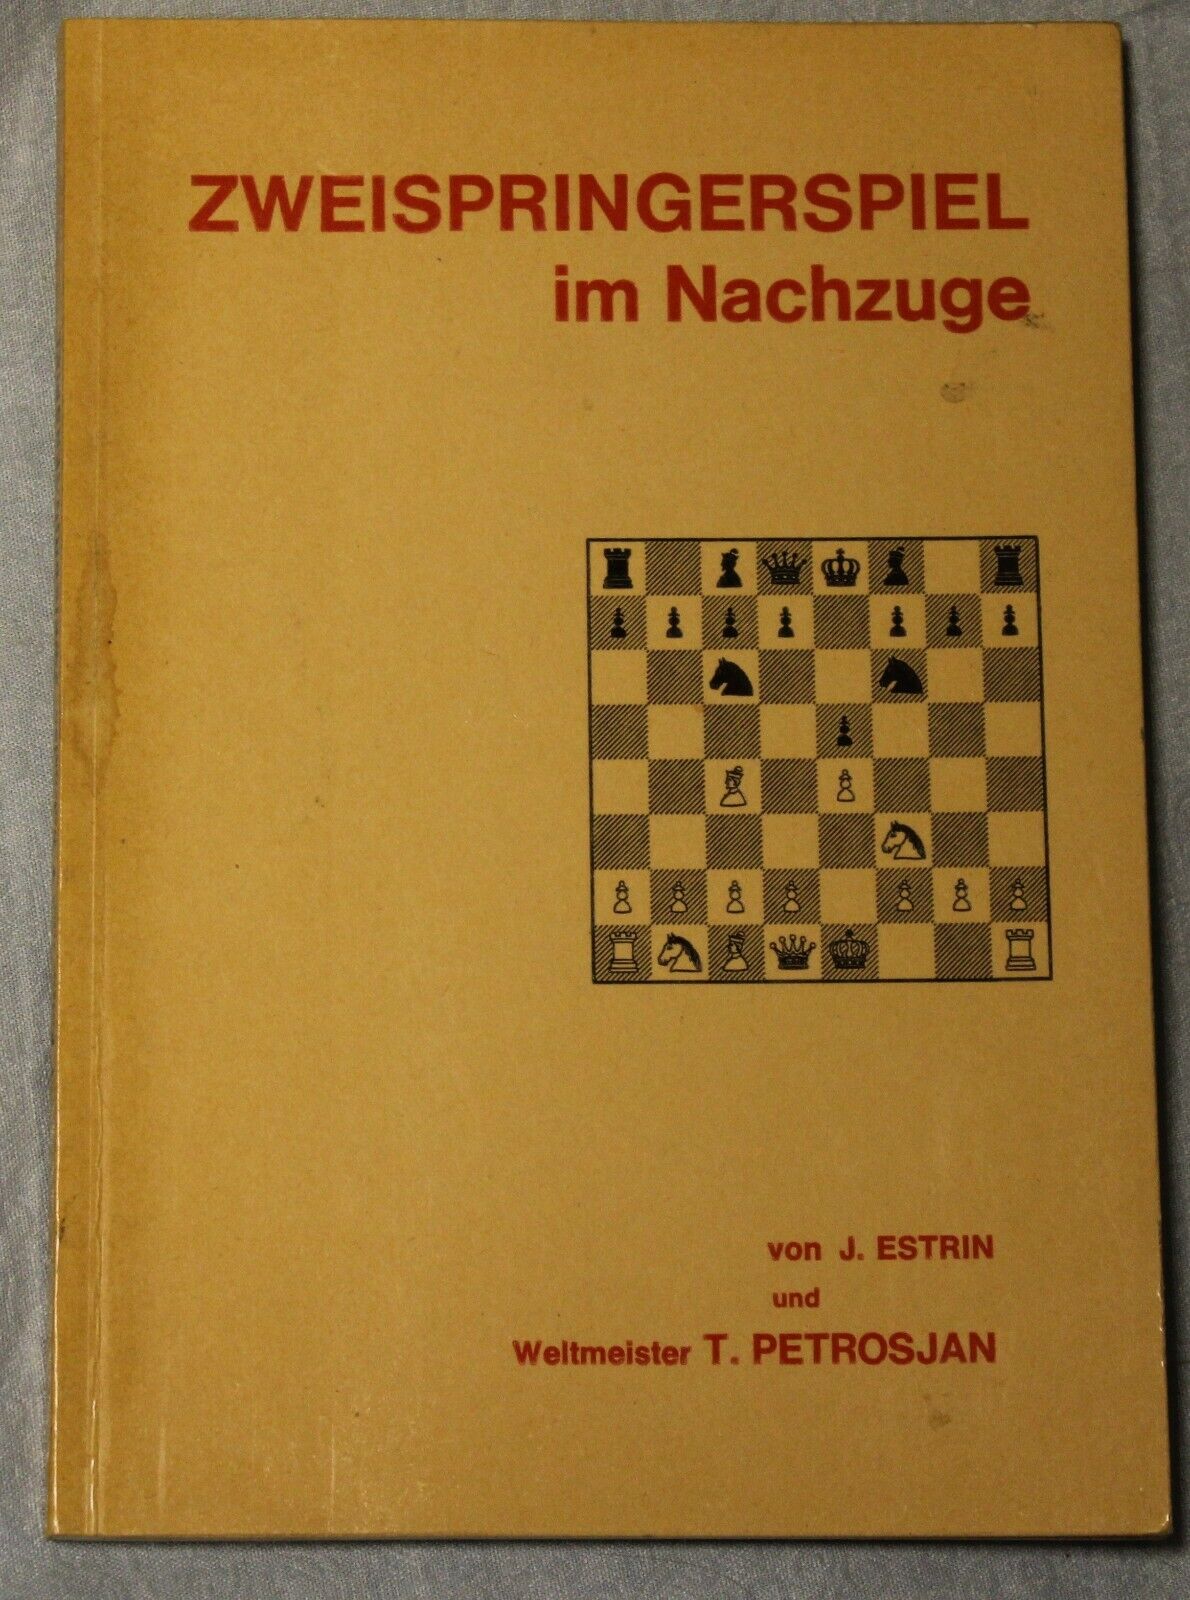 11464.Russian Chess Book signed by  Y. Ėstrin. Zweispringerspiel im Nachzuge. 1966